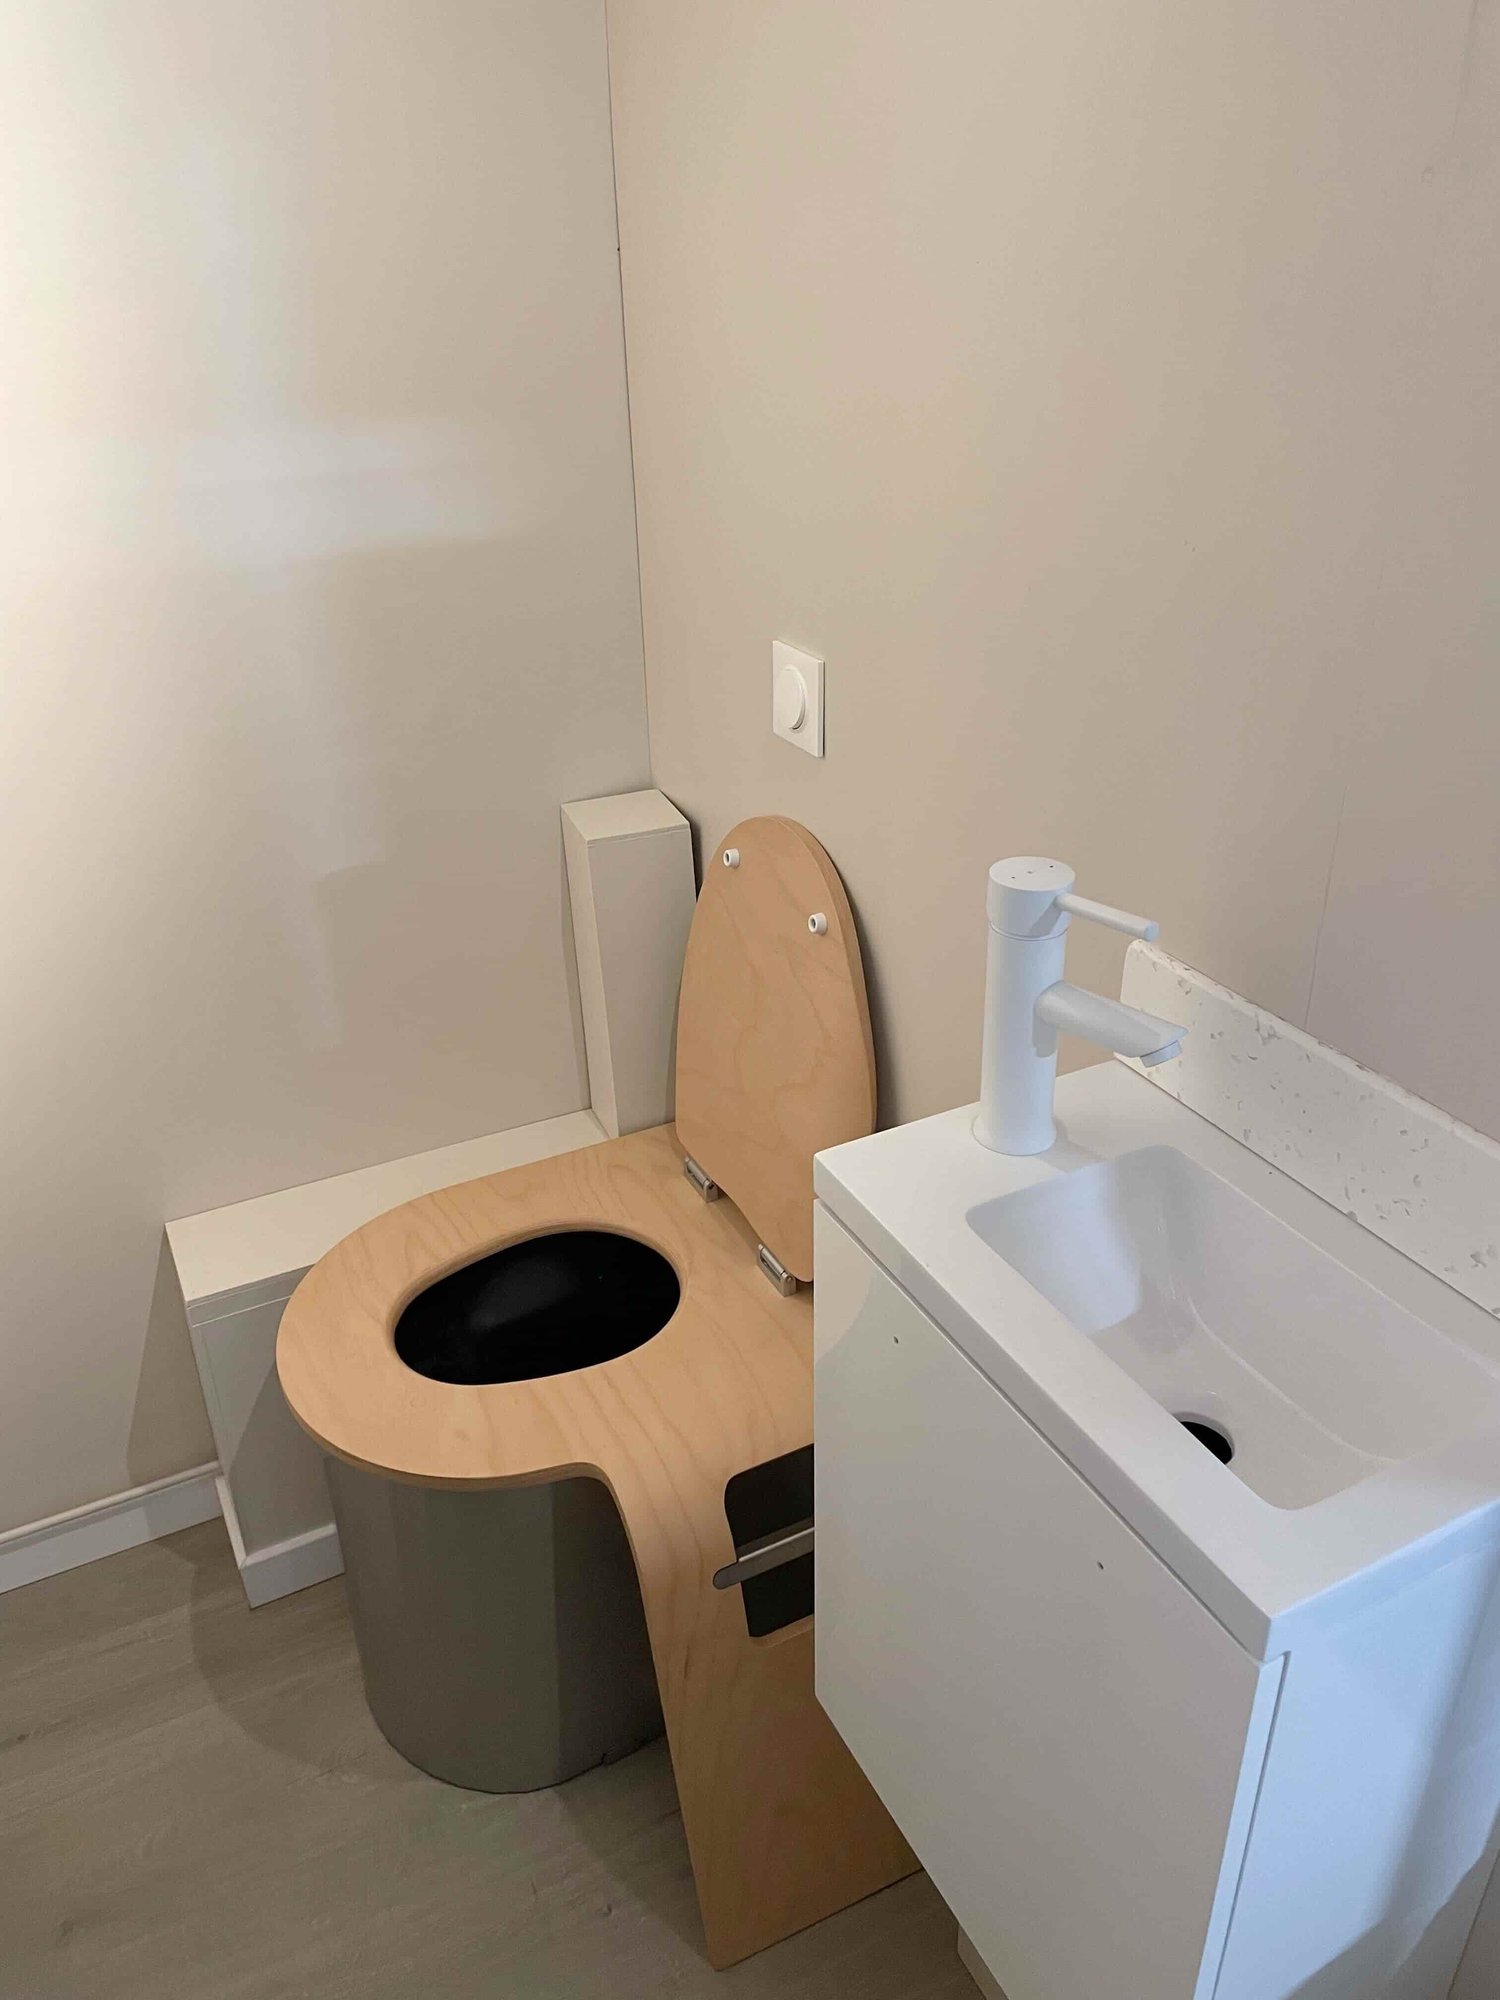 Toilette sèche design à compost pour maison écologique